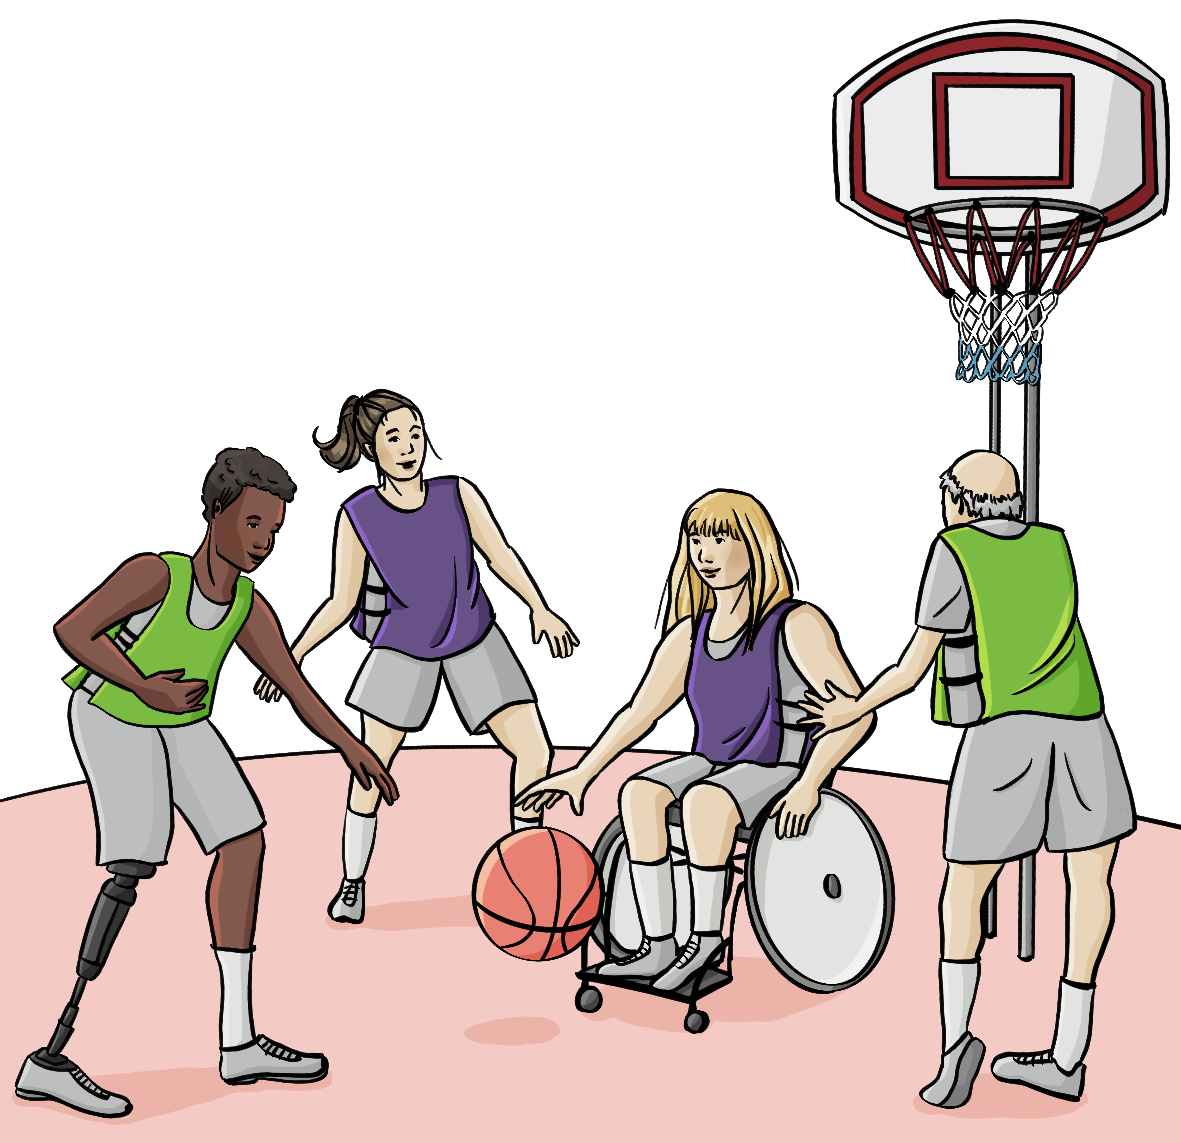 Eine Gruppe Menschen spielt Basketball: Ein junger schwarzer Mann mit Beinprothese, eine junge weißen Frau, eine Frau im Rollstuhl und ein alter Mann. Sie tragen Sporthemdchen, zwei in grün, zwei in lila.